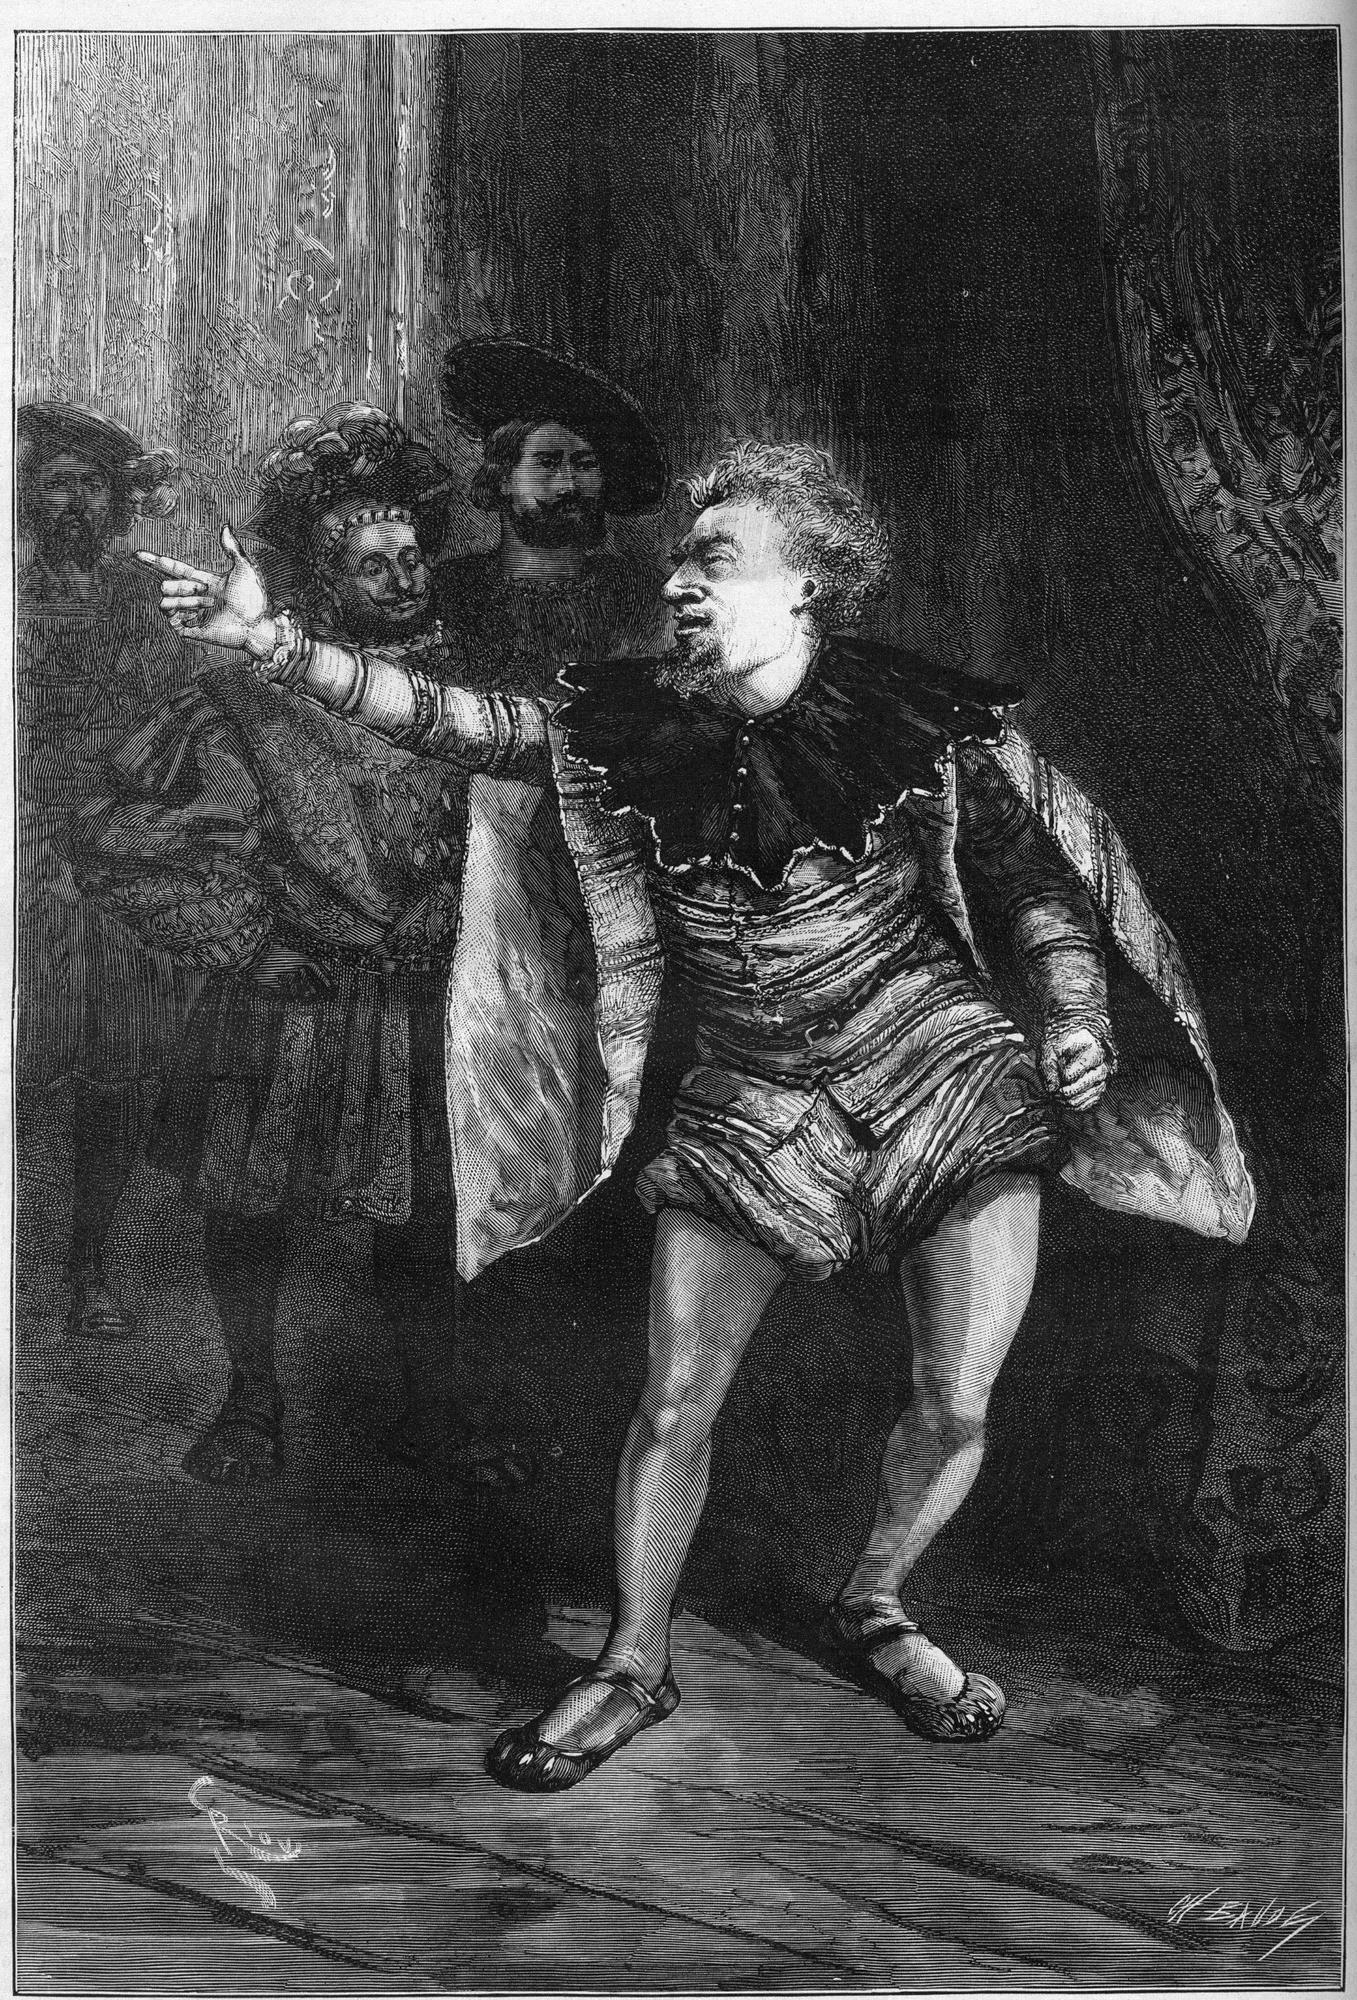 Triboulet dans "Le Roi s'amuse". Gravure de Riou dans "Le Monde Illustré" n°1339 du 25 novembre 1882. [AFP - Leemage]